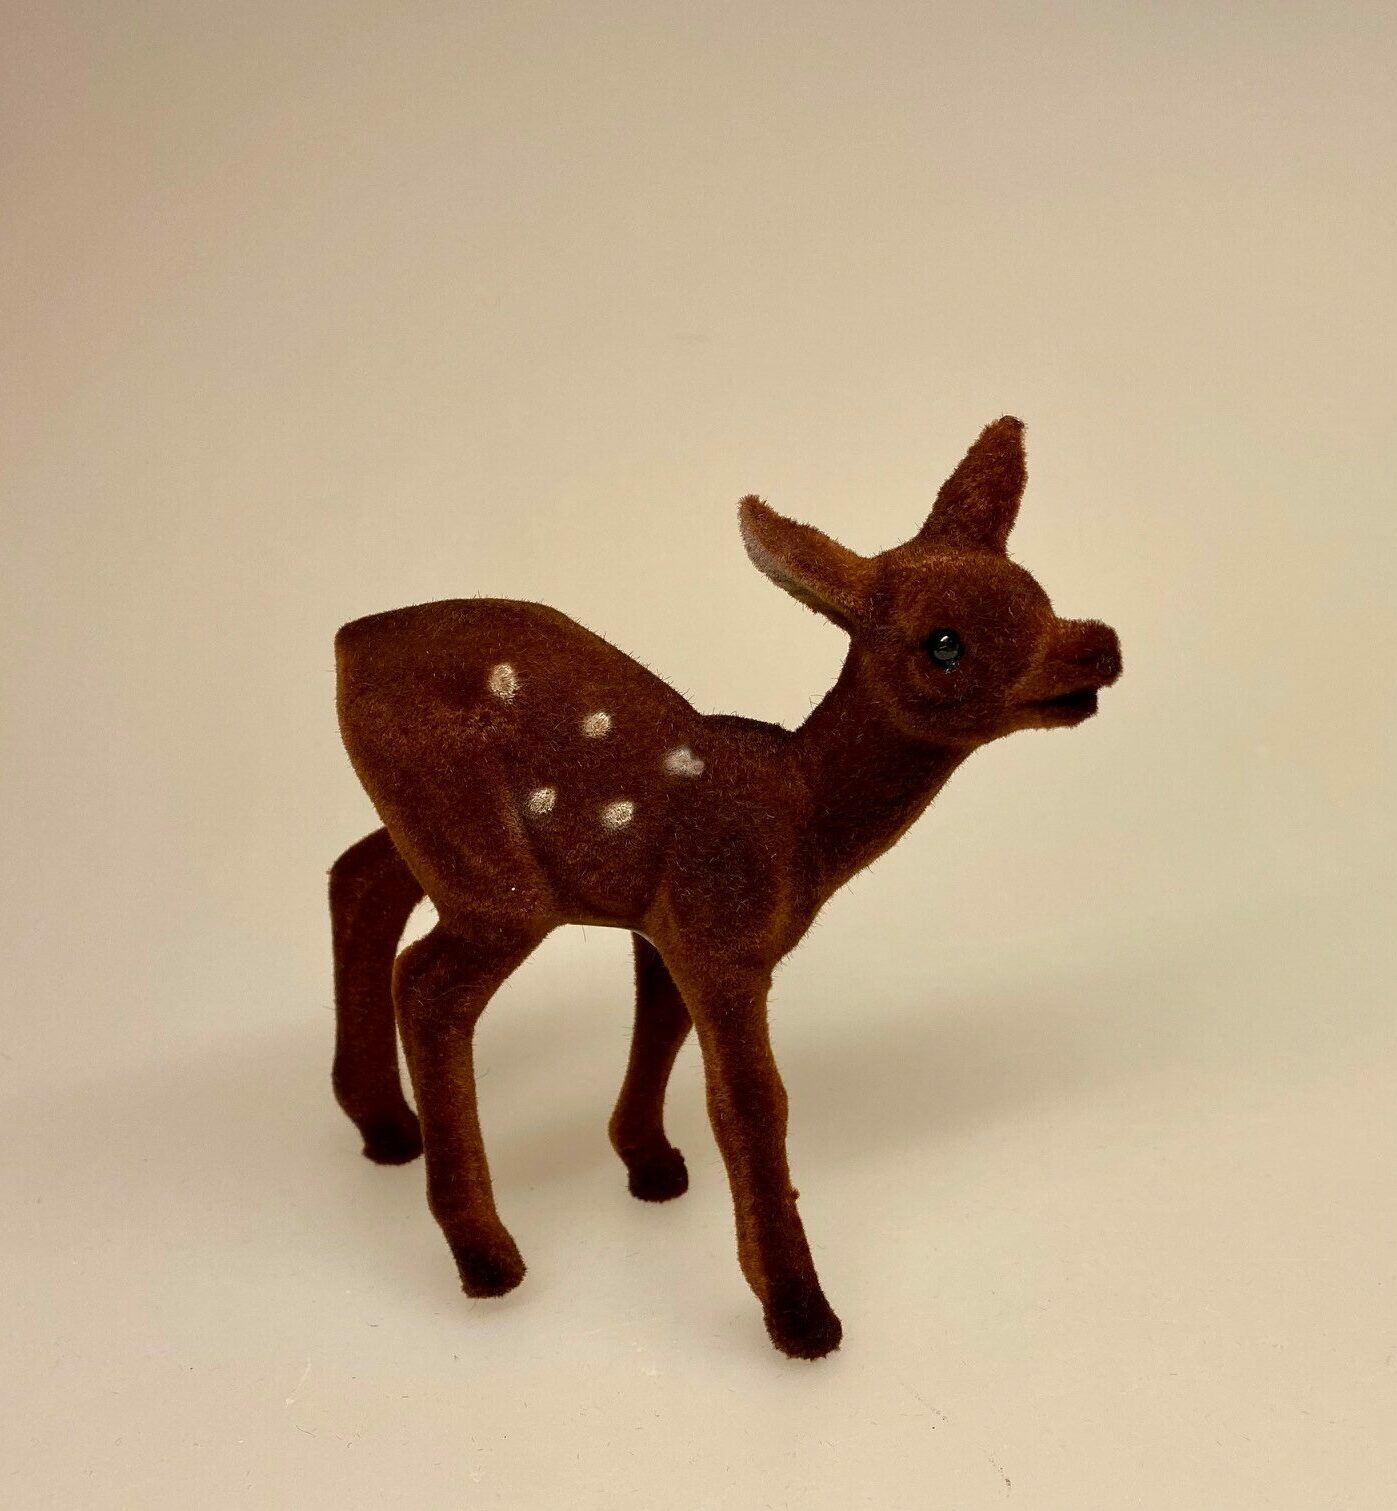 Klassisk Bambi - brun velour - hind, Klassisk Bambi - brun velour - buk, bambi, hjort, rå, då, dådyr, rådyr, stag, hirsh, gammeldags, nostalgisk, biti, ribe, julepynt, dekoration, stilleben,